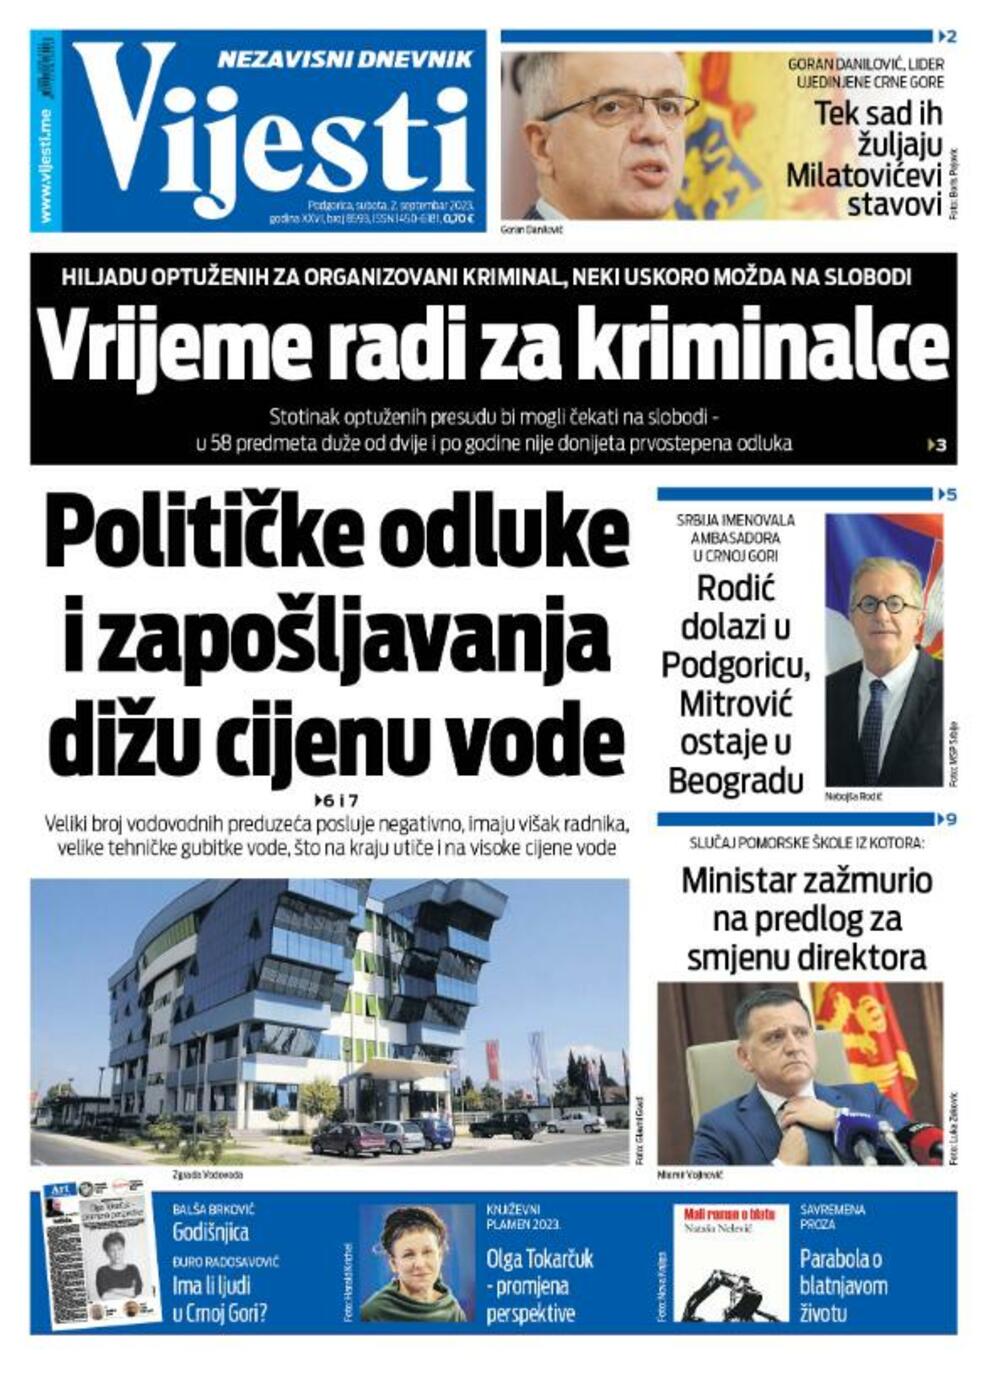 Naslovna strana "Vijesti" za 2. septembar 2023., Foto: Vijesti